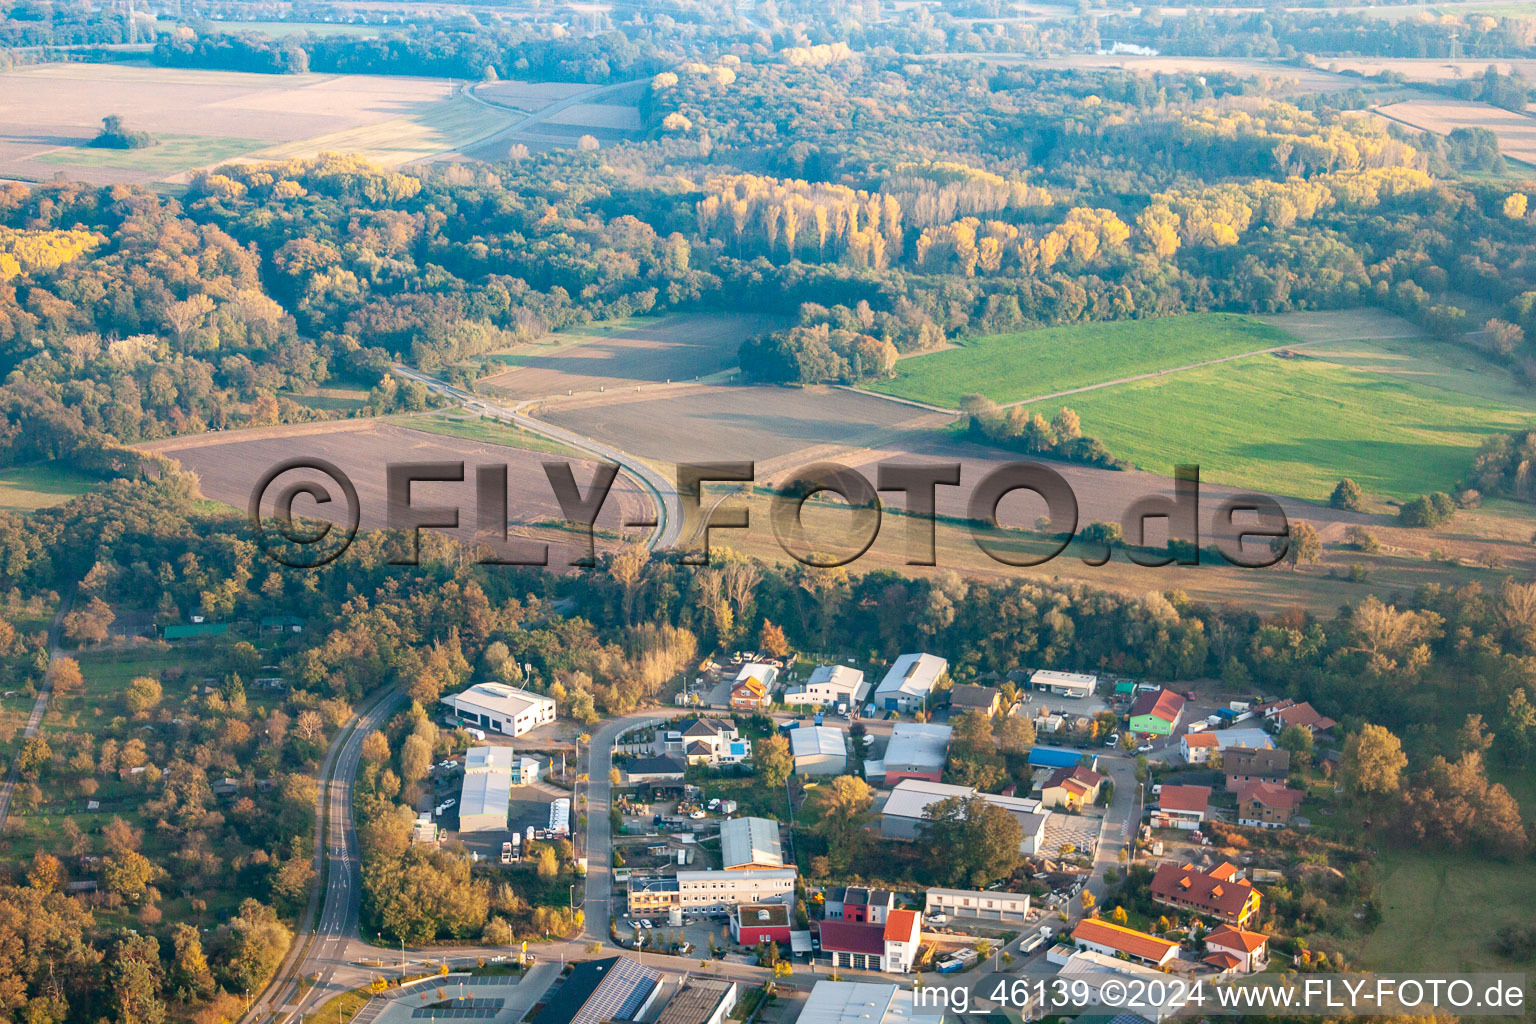 Gewerbegebiet Mittelwegring in Jockgrim im Bundesland Rheinland-Pfalz, Deutschland aus der Drohnenperspektive